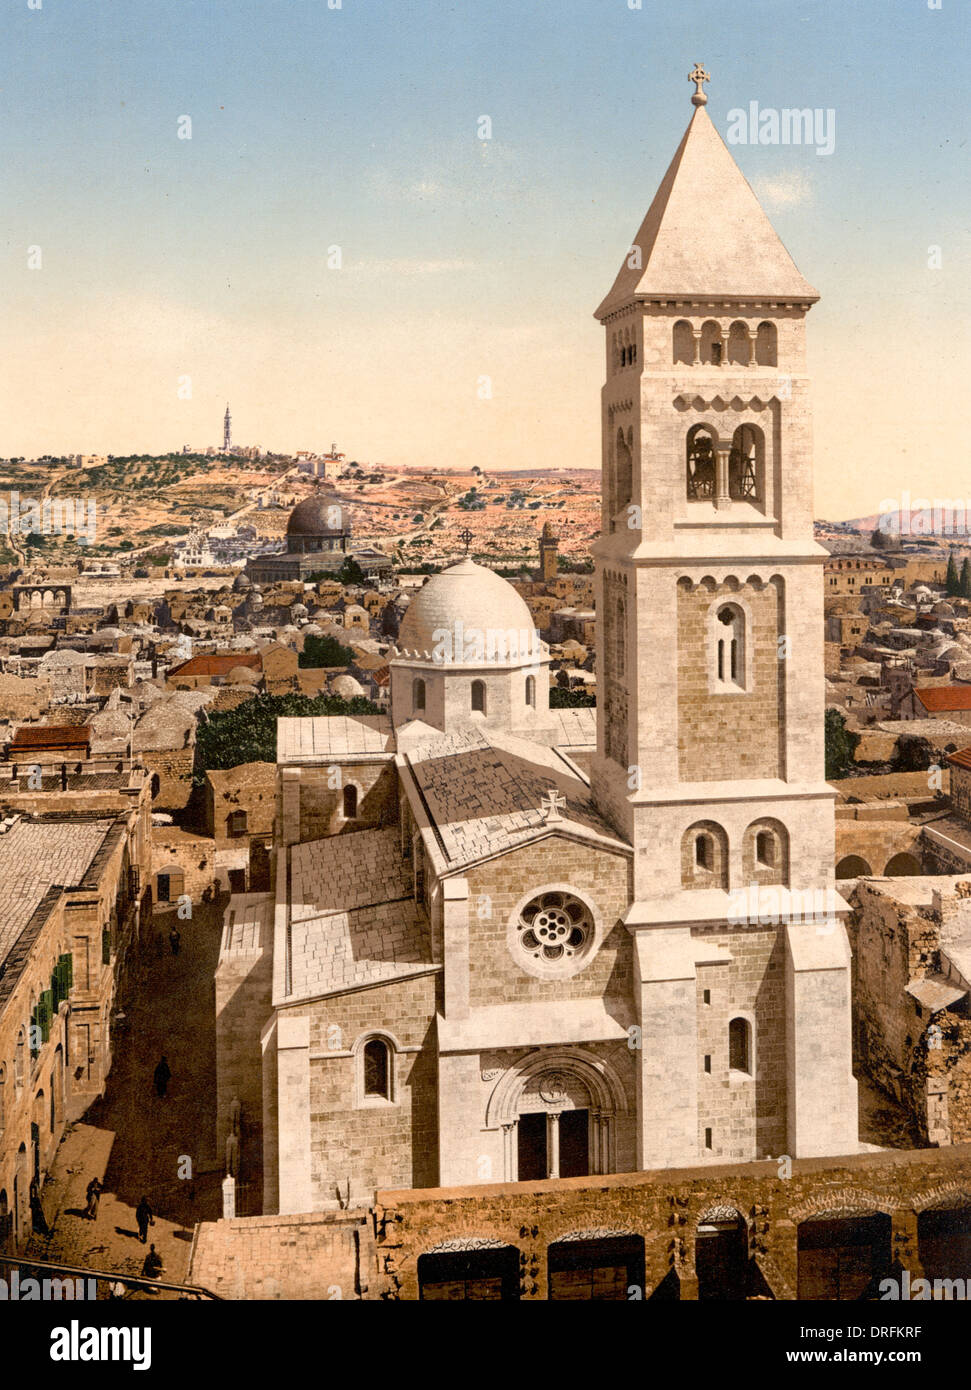 Eglise de Saint Sauveur, Jérusalem, Terre sainte, vers 1900 Banque D'Images